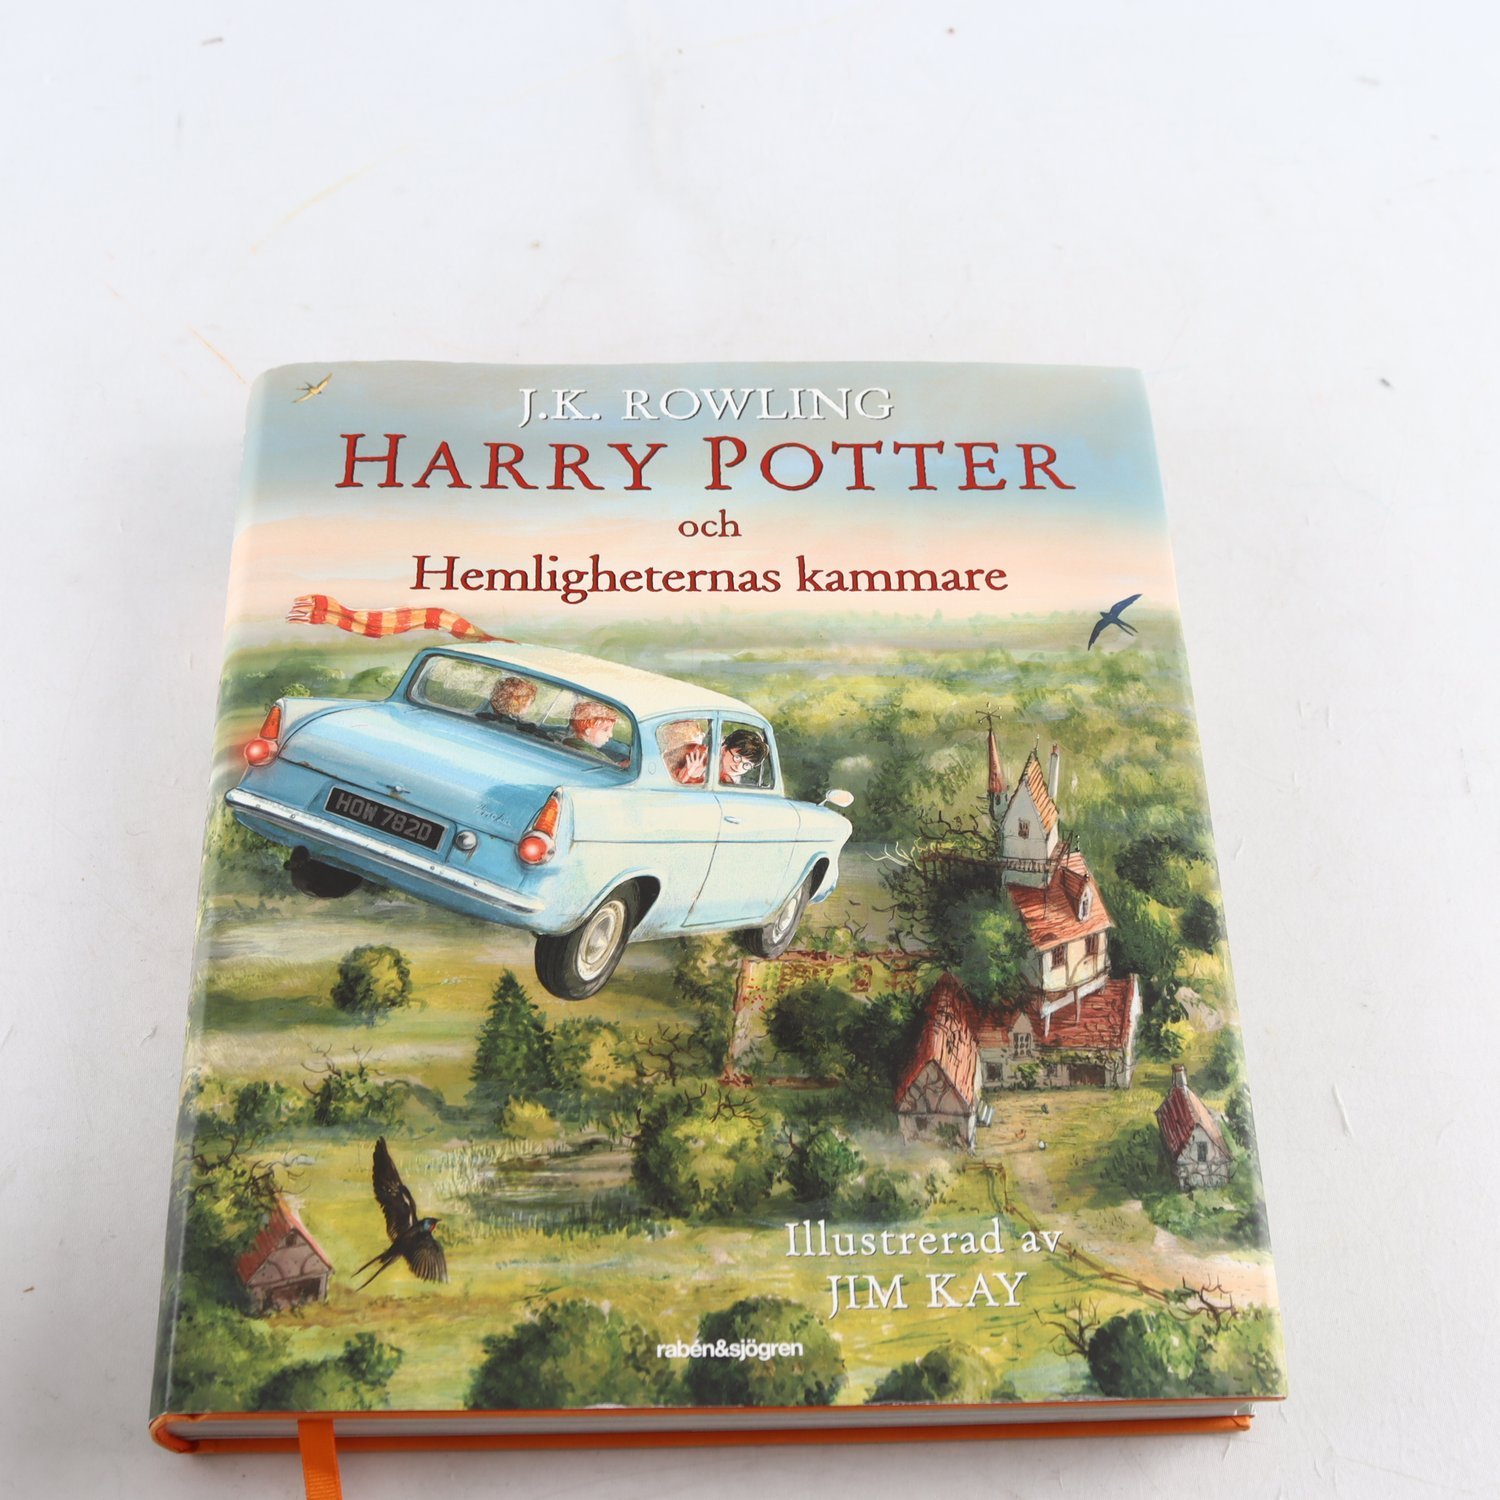 J. K. Rowling, Harry Potter och Hemligheternas kammare, ill: Jim Kay